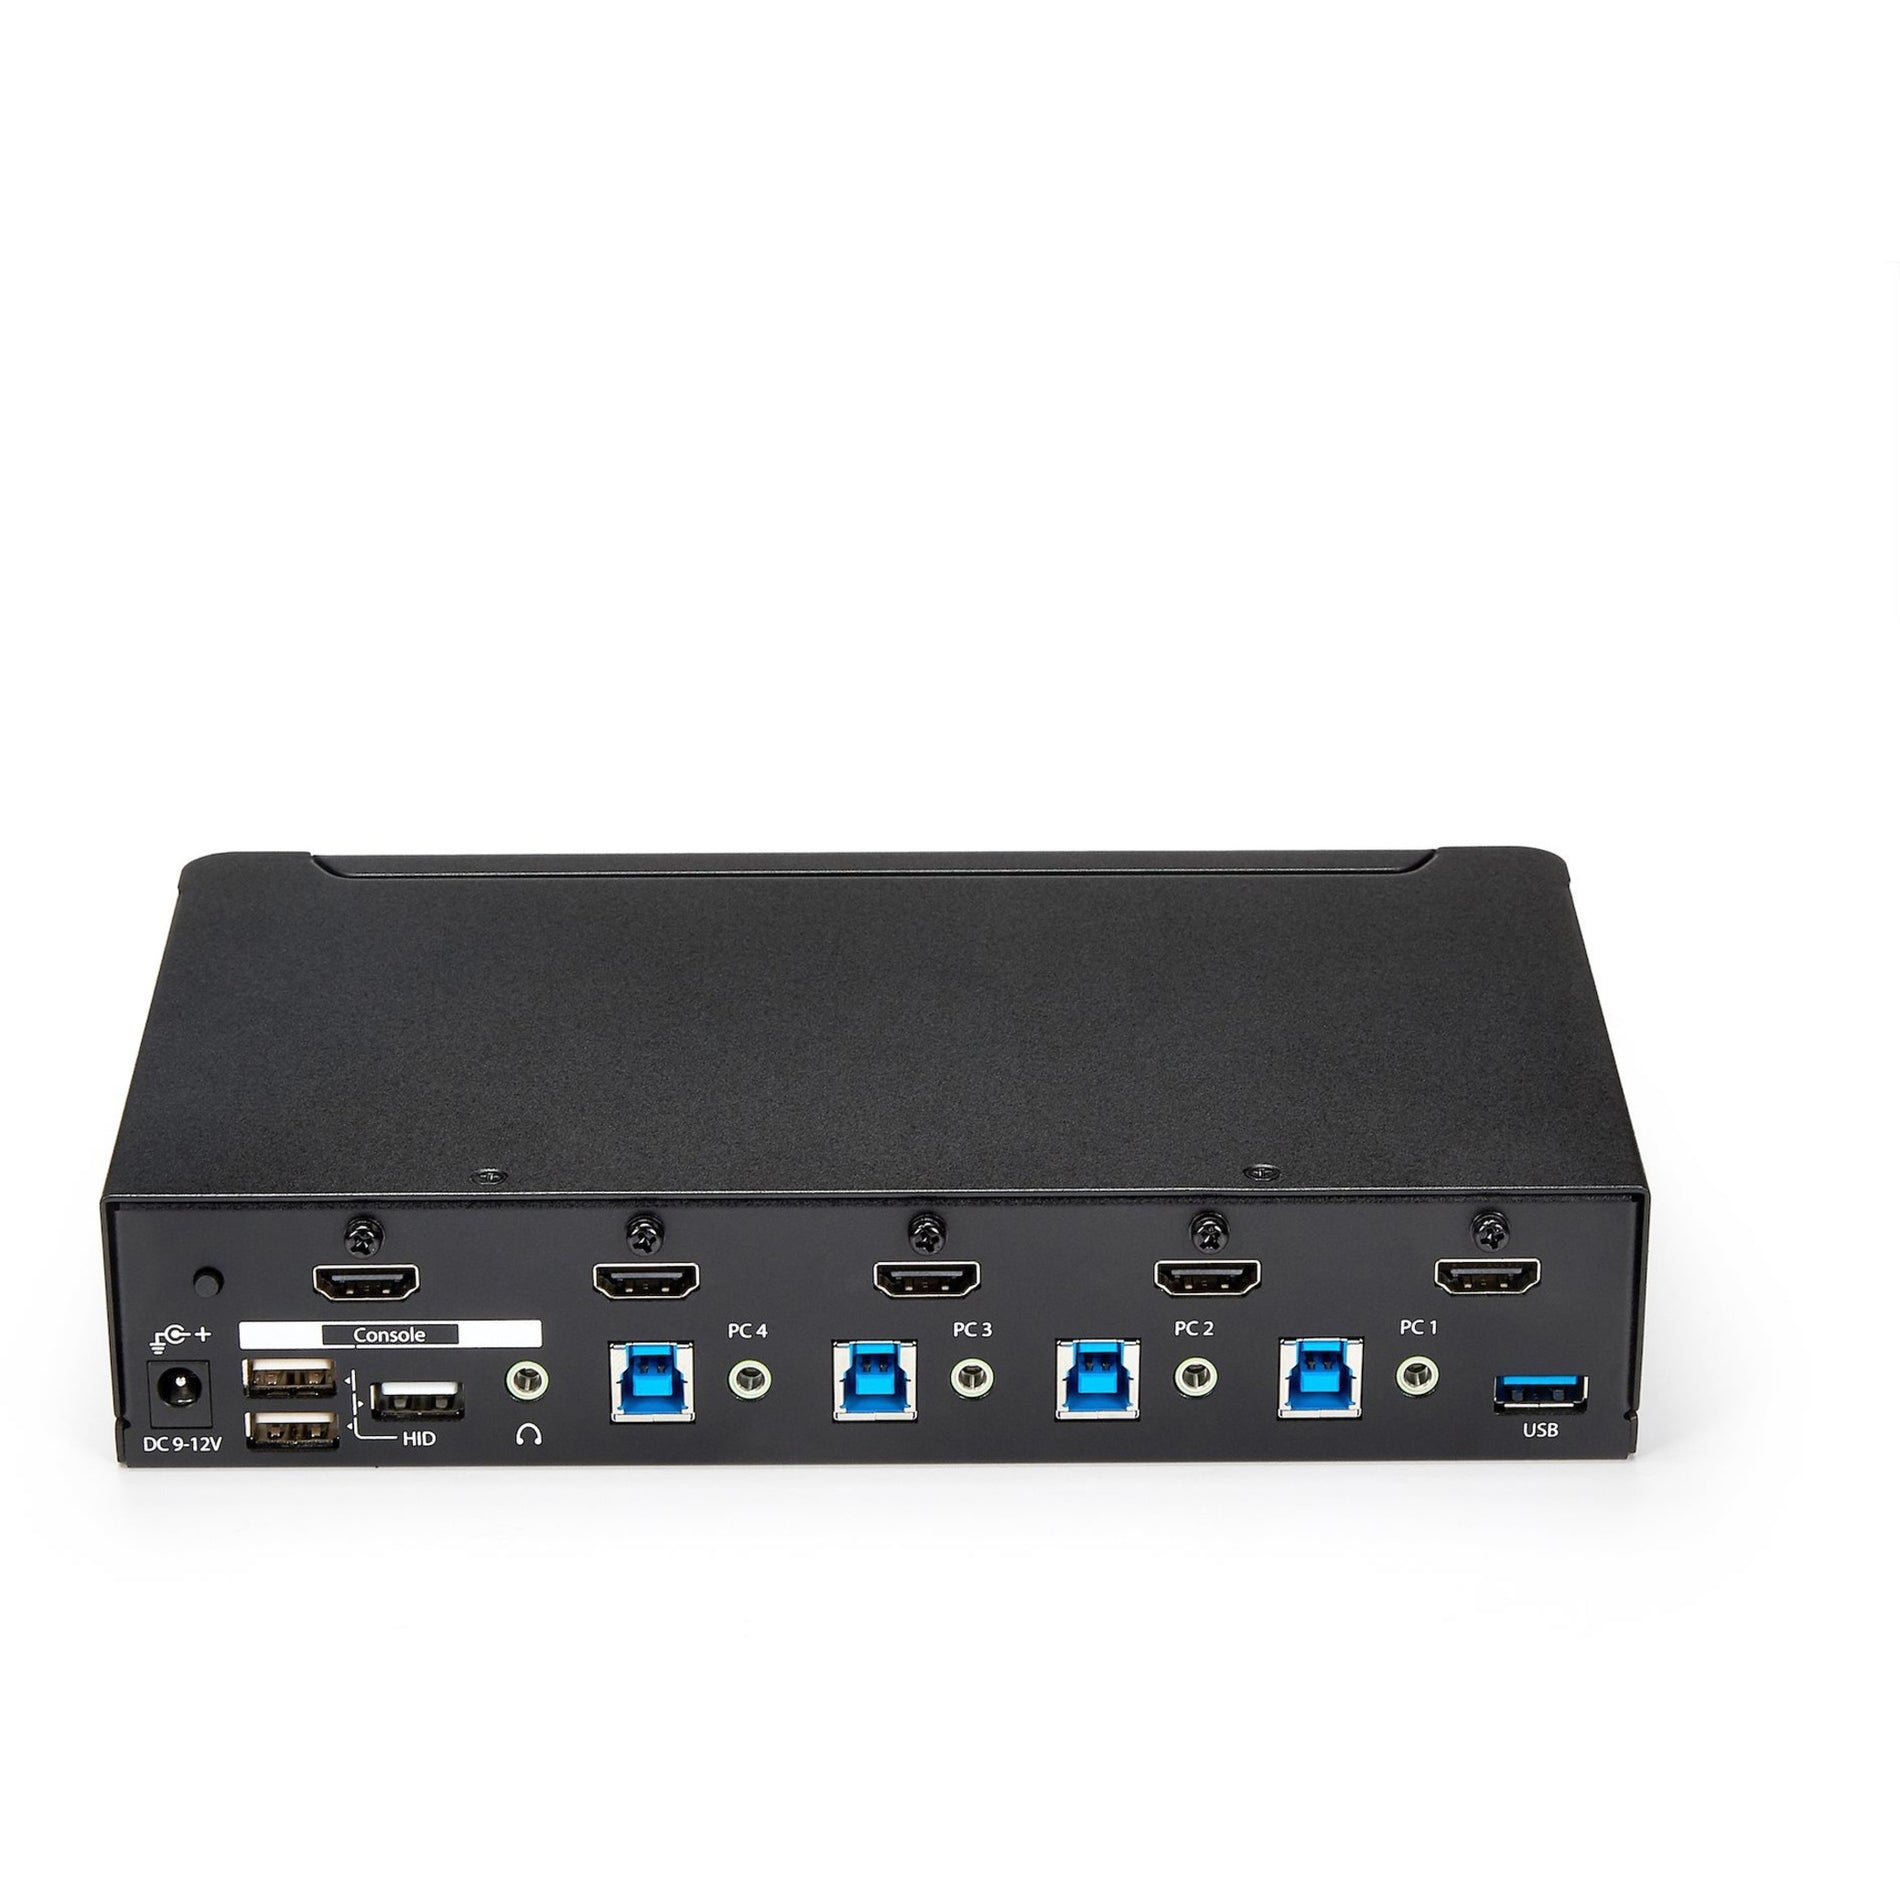 スタートレック・ドットコム SV431HDU3A2 4ポートHDMI KVMスイッチ - 内蔵USB 3.0ハブ、1080p